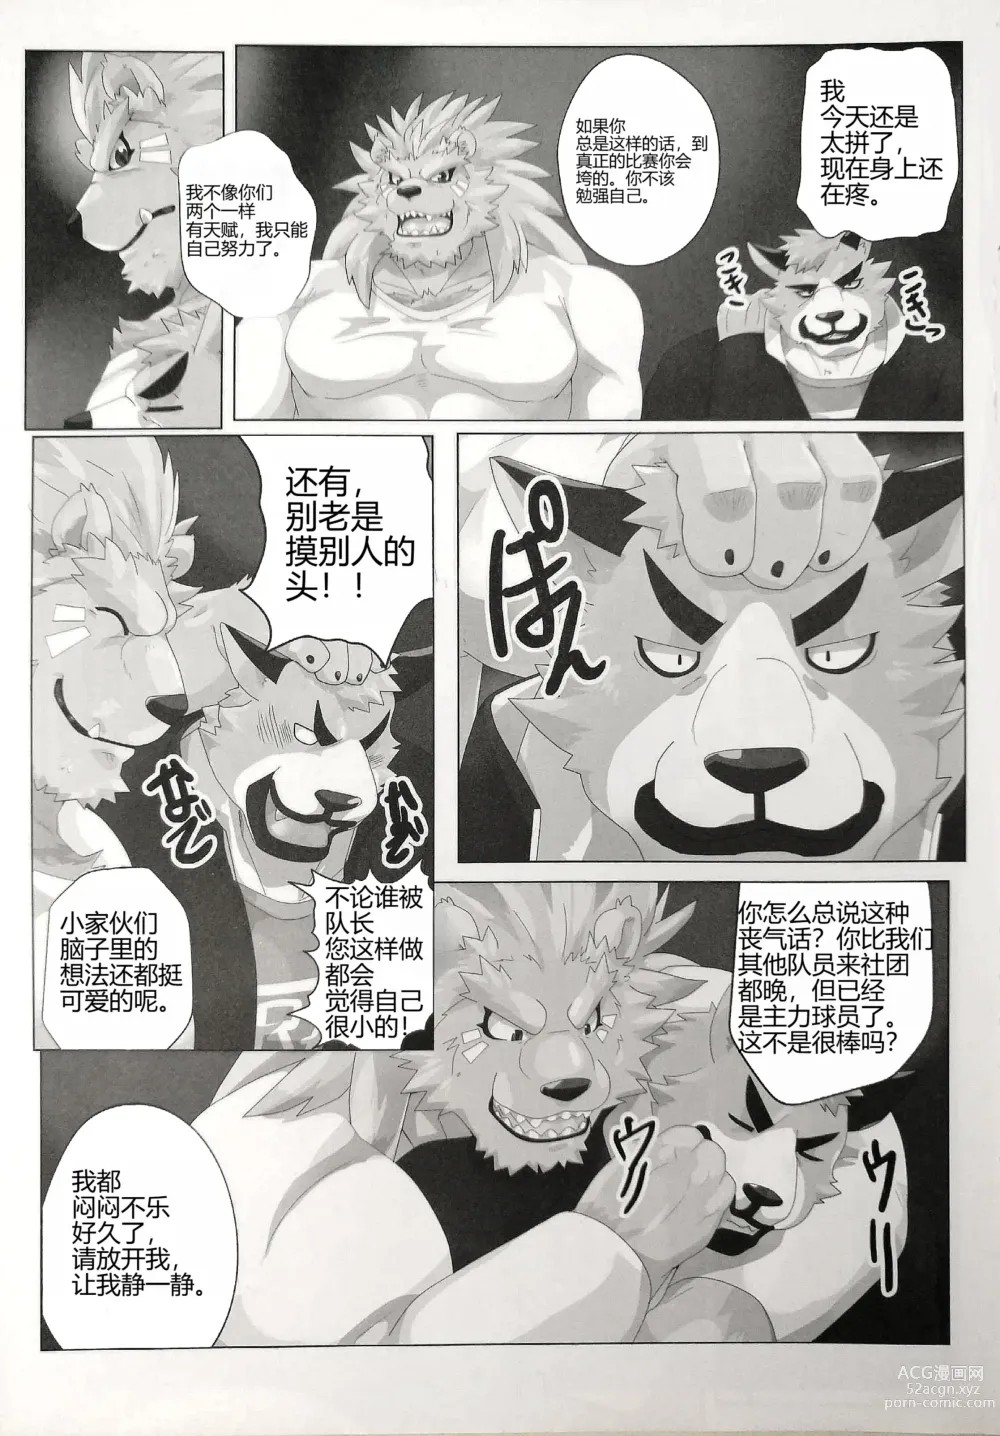 Page 8 of manga 我的父亲!